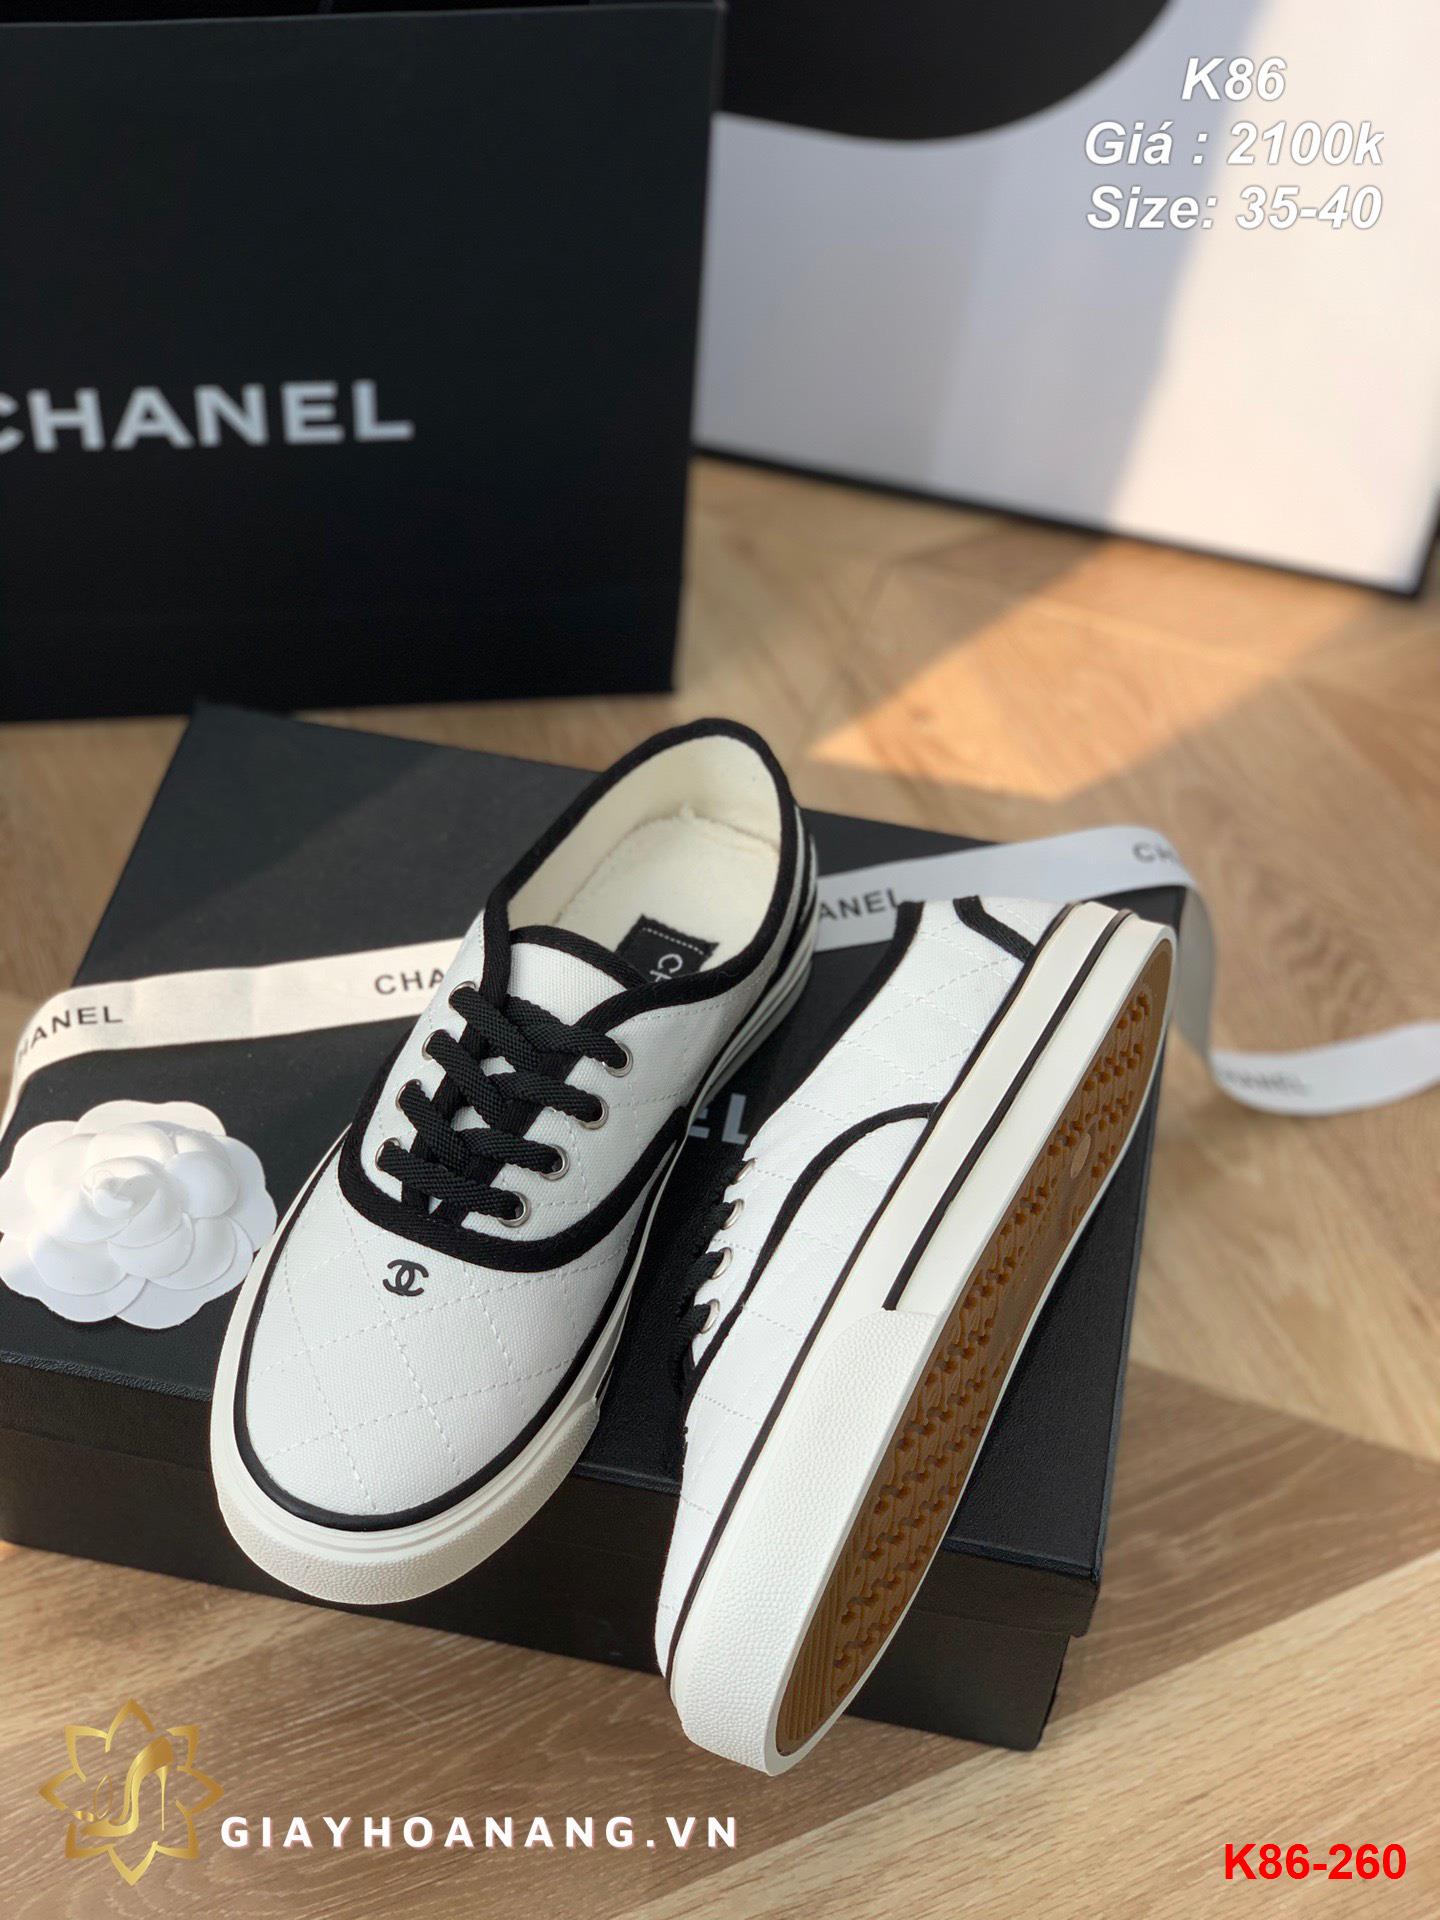 K86-260 Chanel giày thể thao siêu cấp